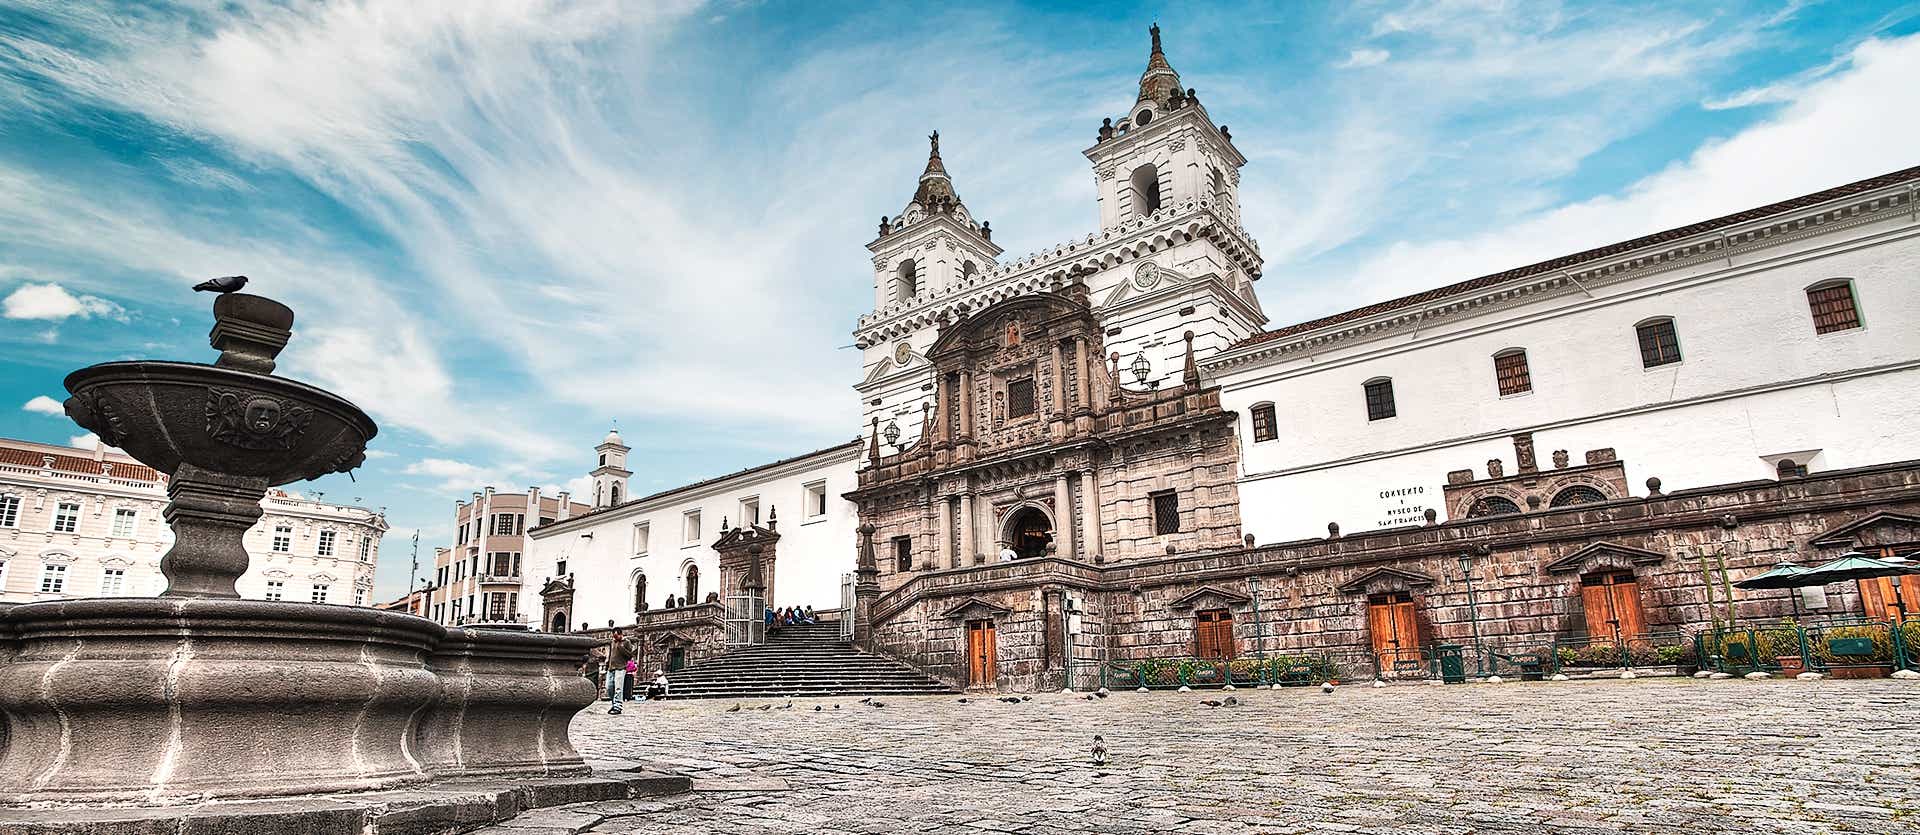 San Francisco Church <span class="iconos separador"></span> Quito <span class="iconos separador"></span> Ecuador